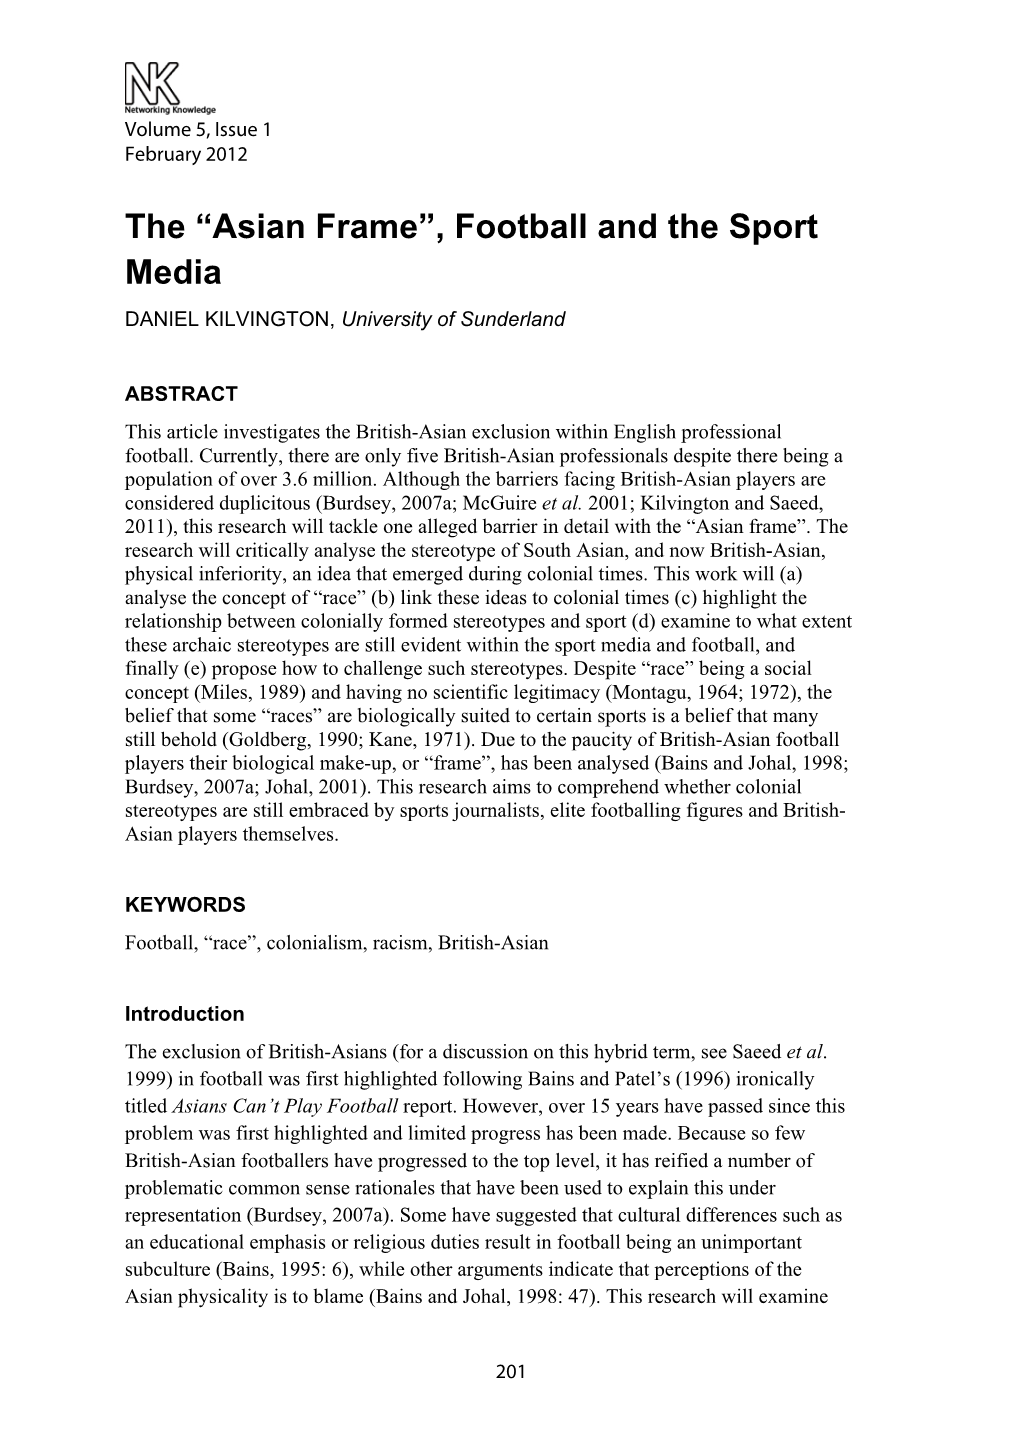 The “Asian Frame”, Football and the Sport Media DANIEL KILVINGTON, University of Sunderland